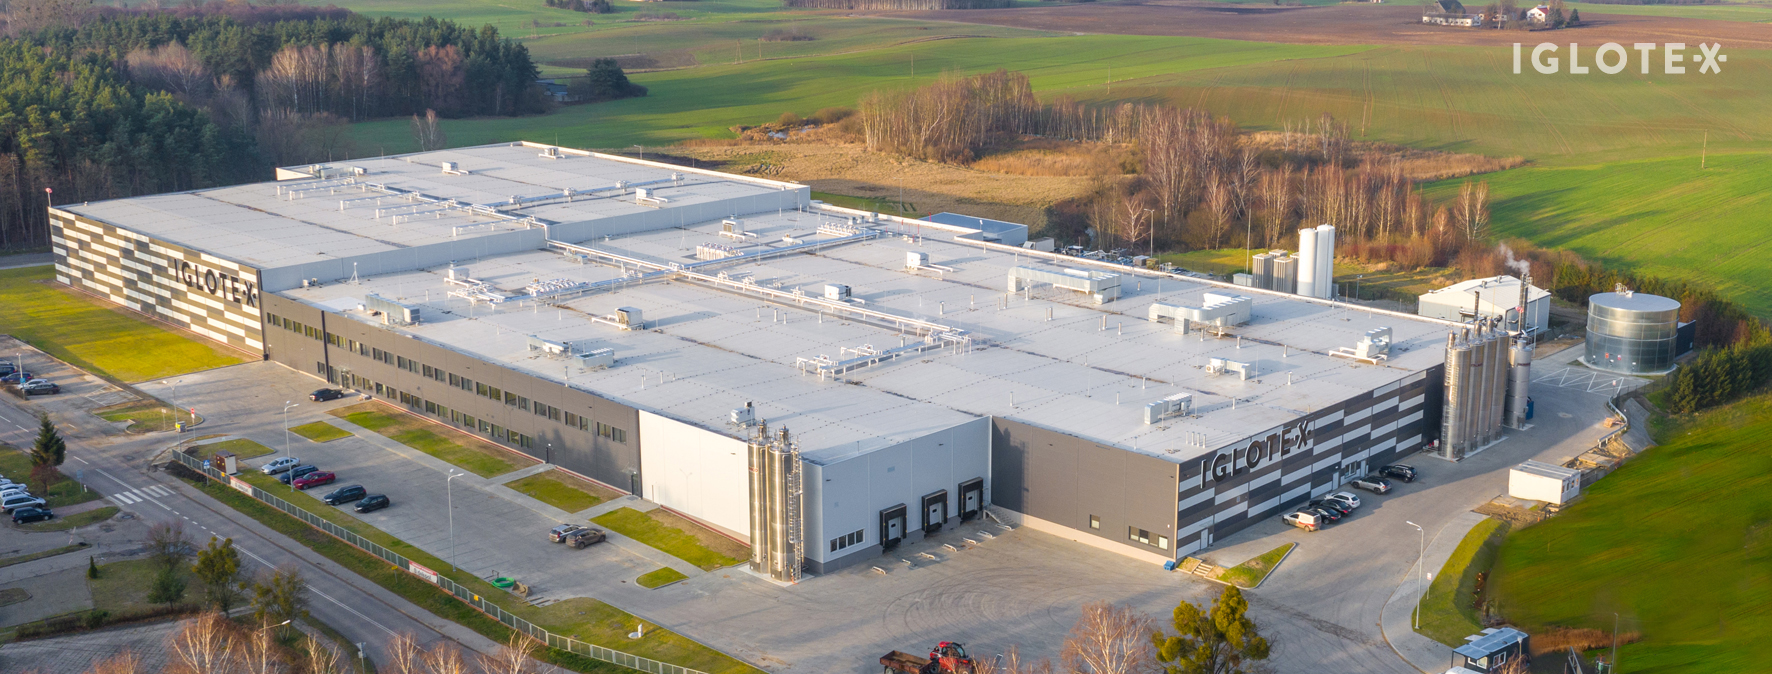 Nowy zakład produkcyjny Iglotex i centrum dystrybucyjne w Skórczu oficjalnie otwarte!